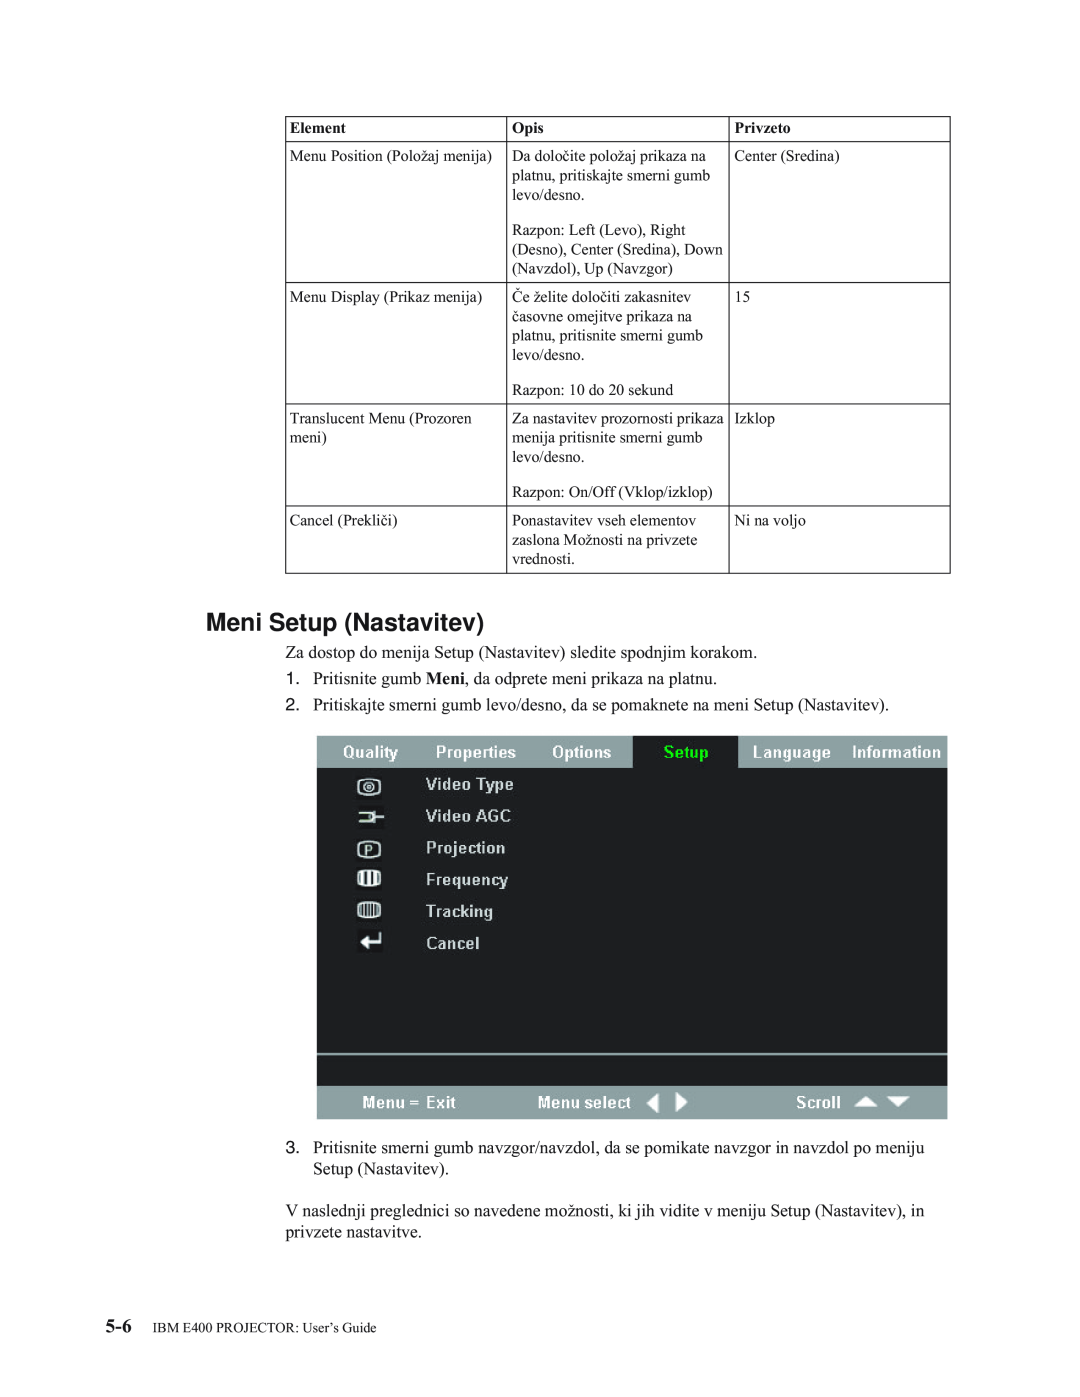 IBM manual Meni Setup Nastavitev, IBM E400 PROJECTOR User’s Guide 